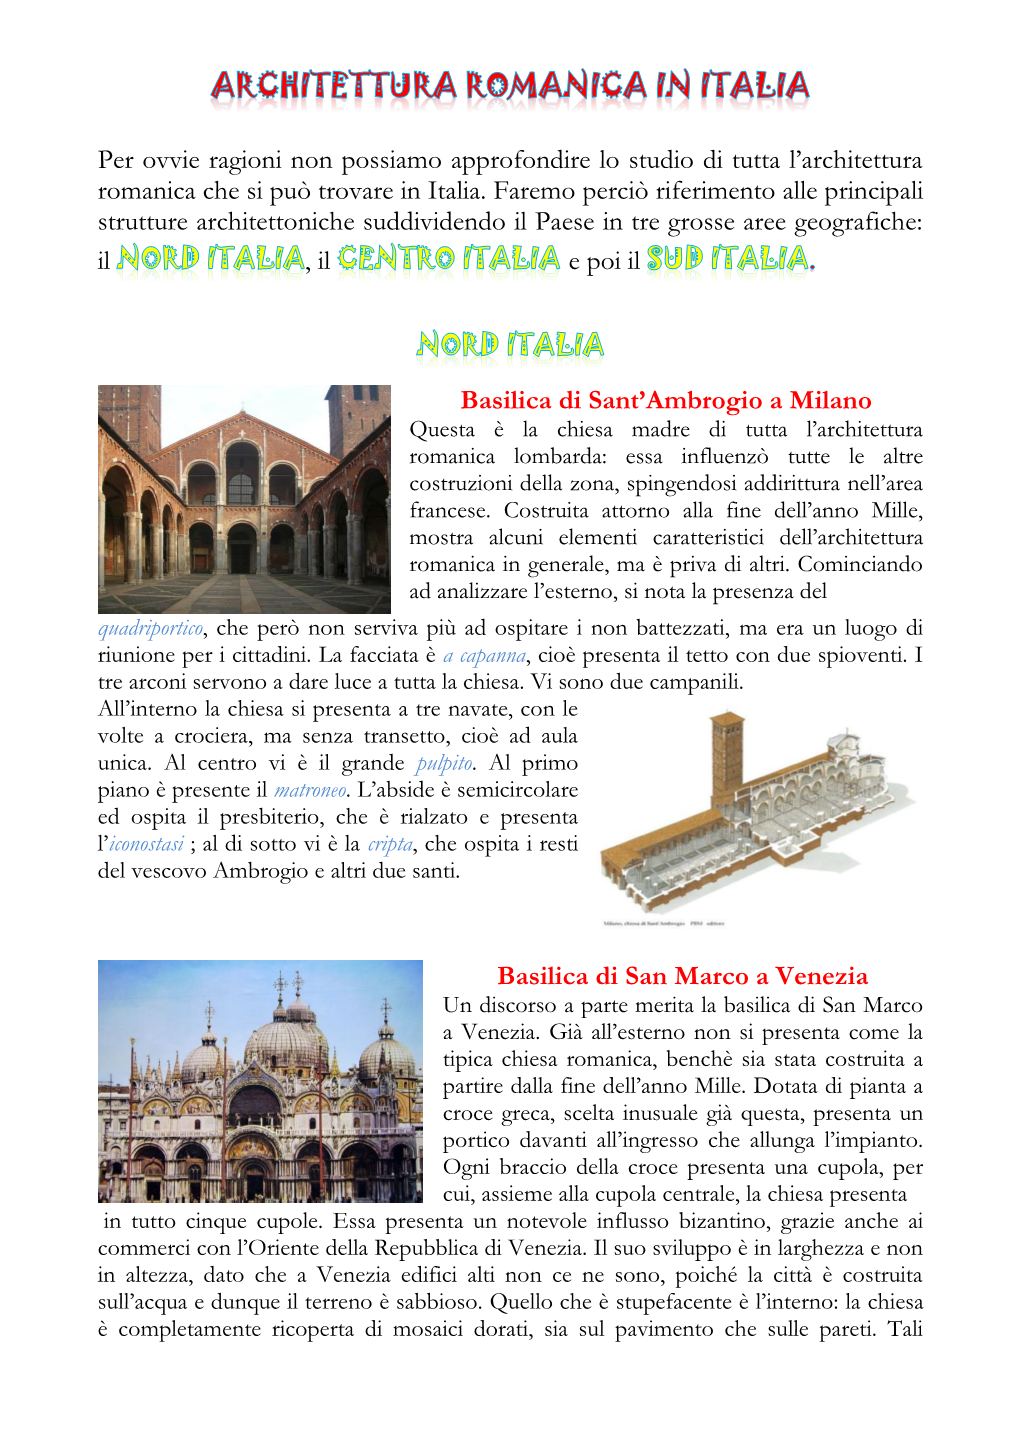 Per Ovvie Ragioni Non Possiamo Approfondire Lo Studio Di Tutta L’Architettura Romanica Che Si Può Trovare in Italia